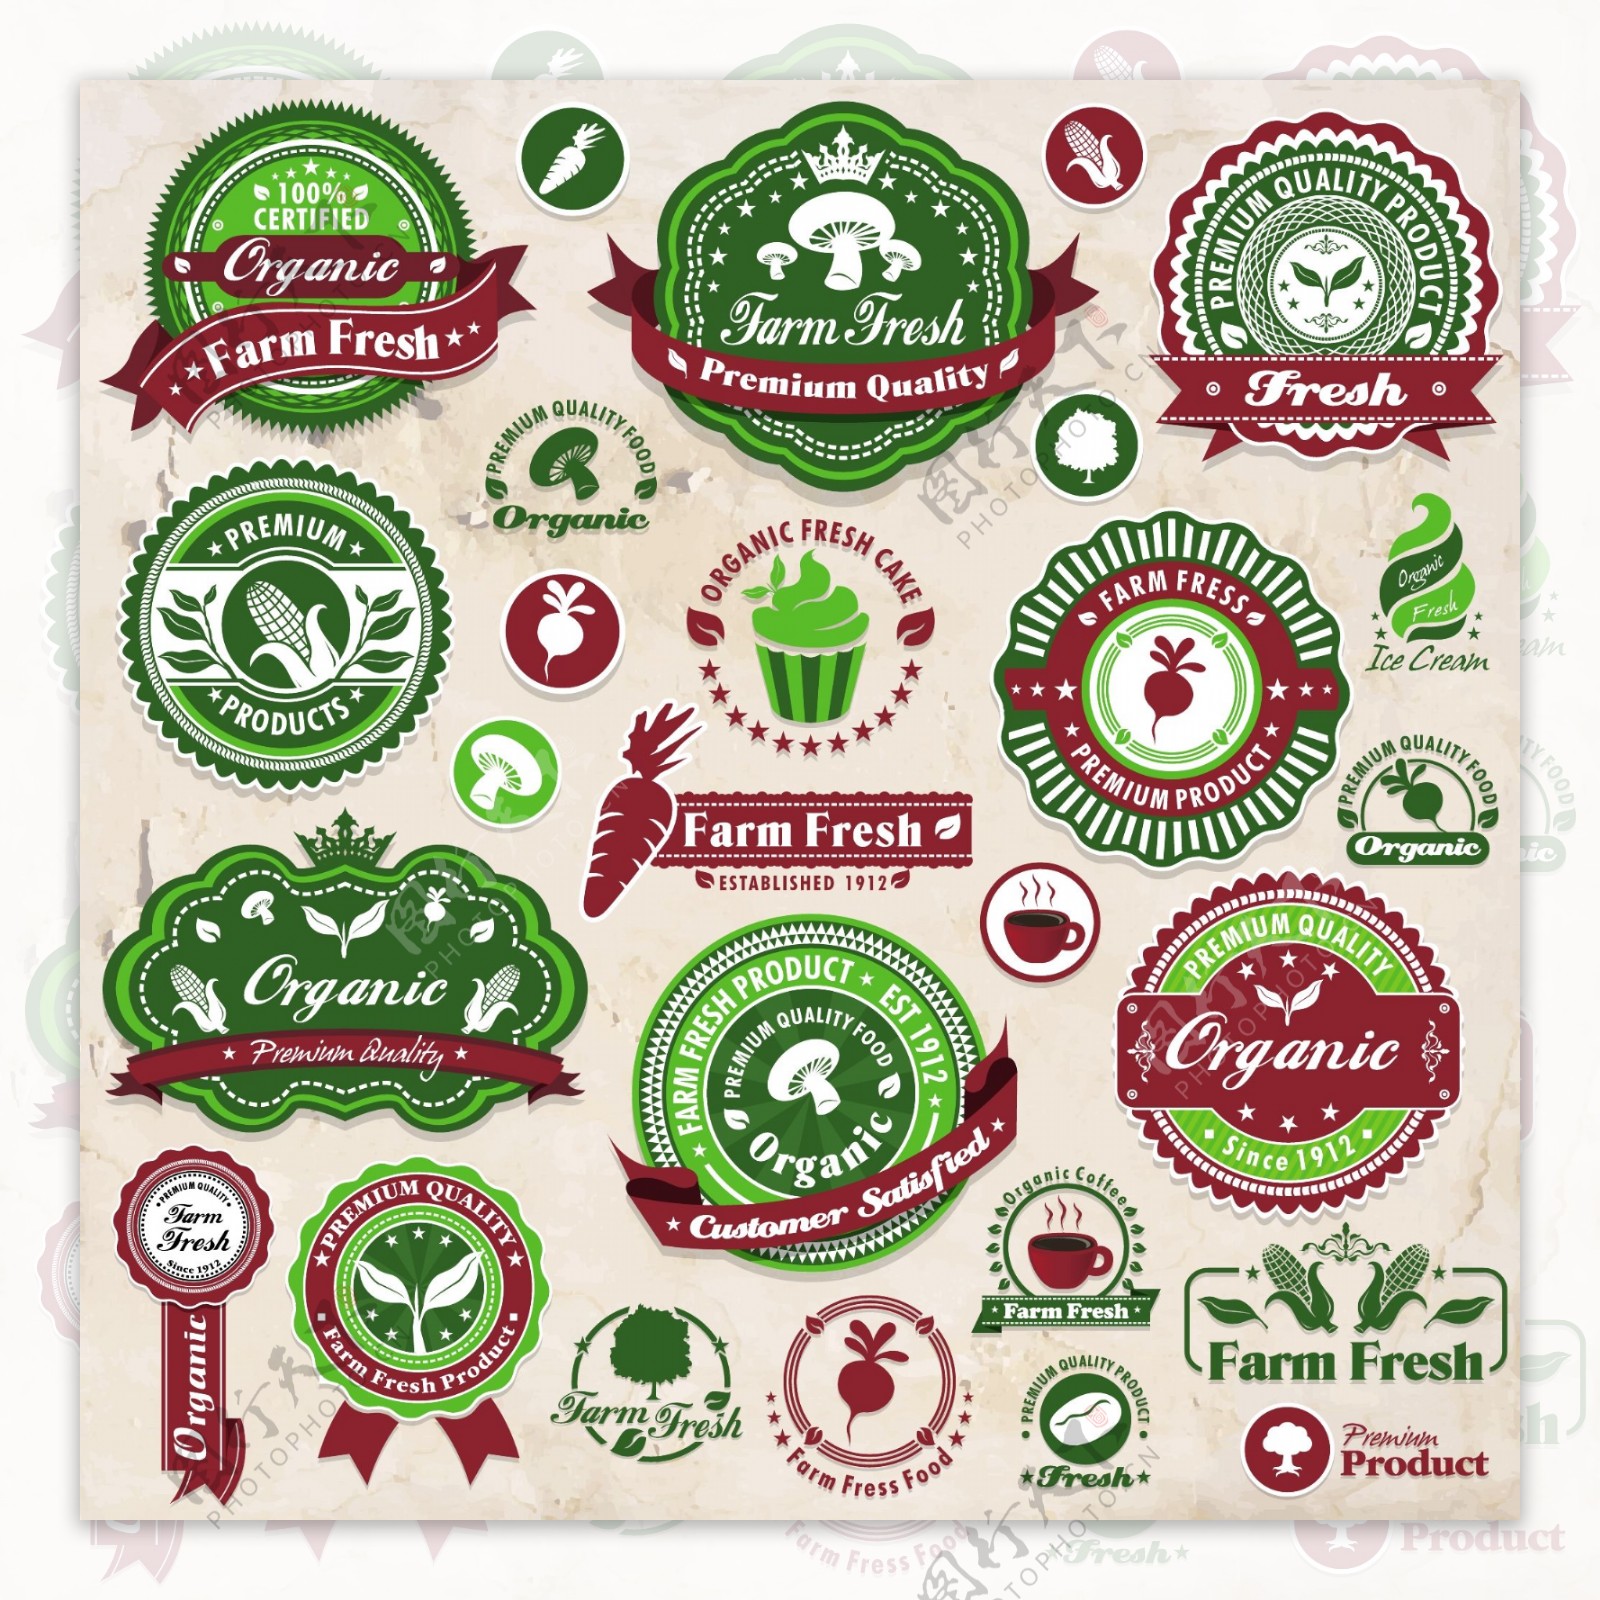 绿色环保生态农业标签图片